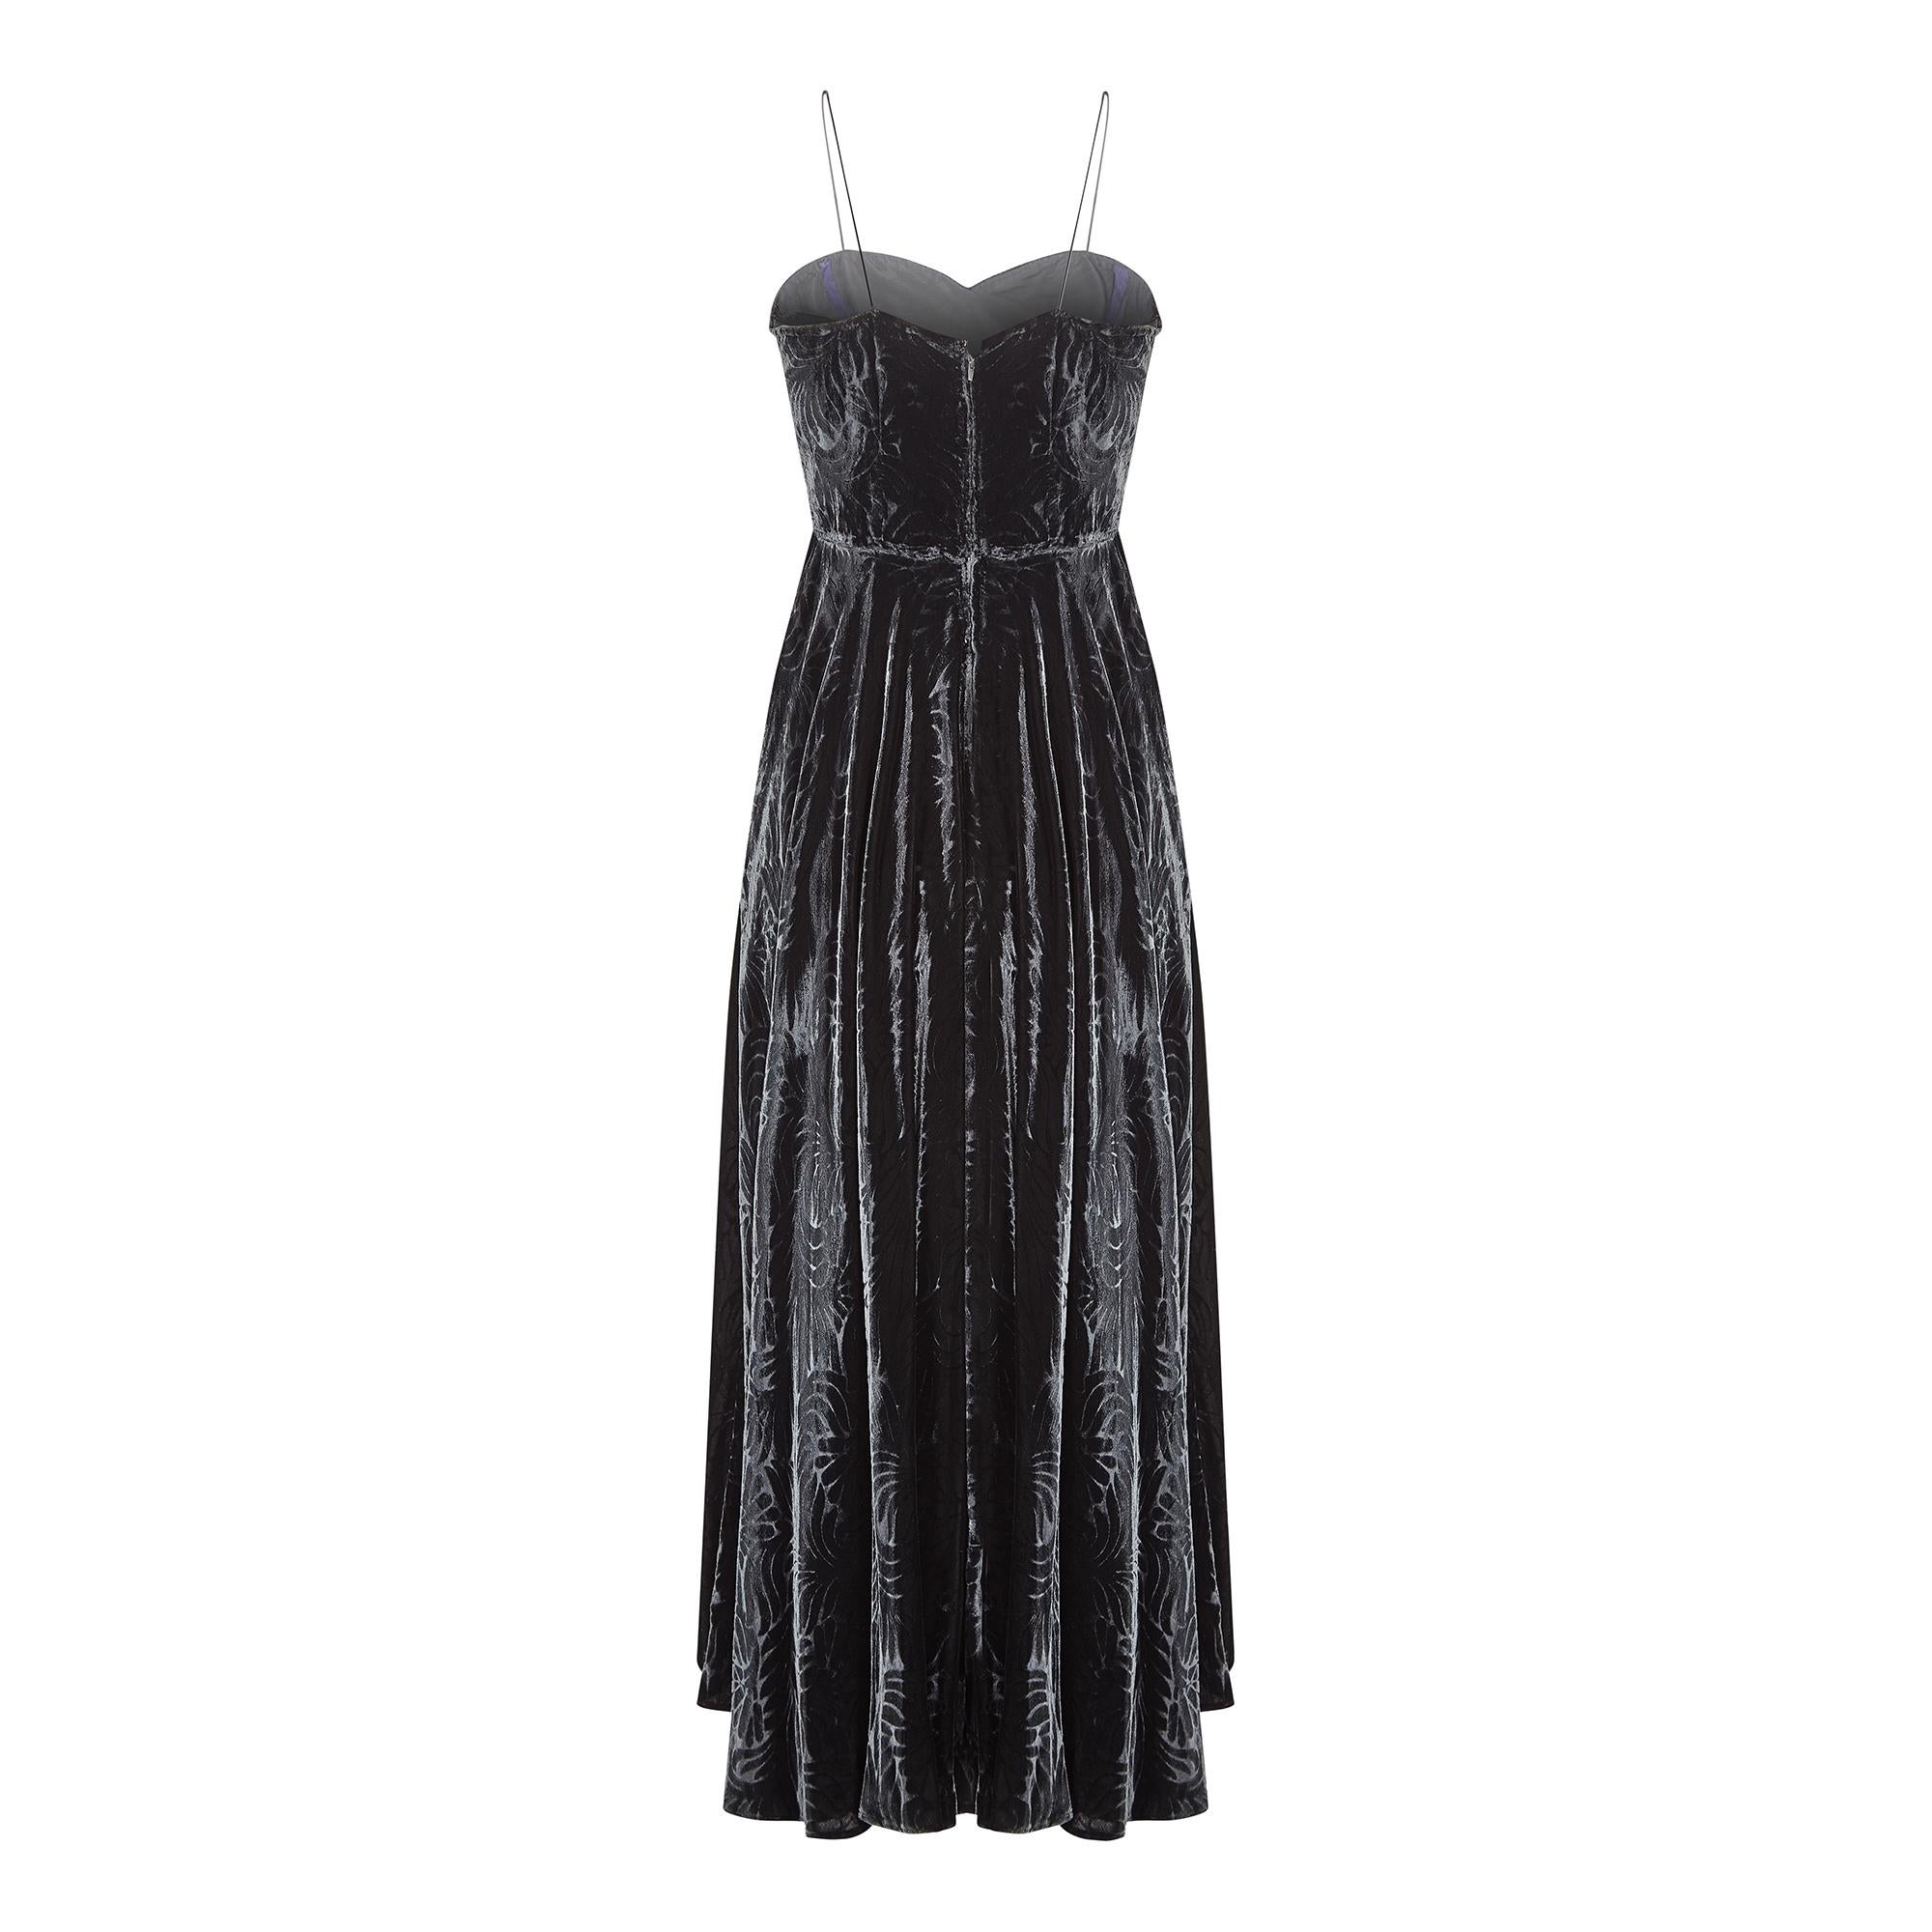 CIRCA 1940er Jahre, dieses Kleid aus geprägtem Pannesamt hat einen fabelhaften Art Deco Blumen- und Blattdruck und einen langen, getäfelten Rock.  Der kreisrunde Saum hat Schrägschnittelemente, die für eine gleichmäßige, ausgestellte Passform